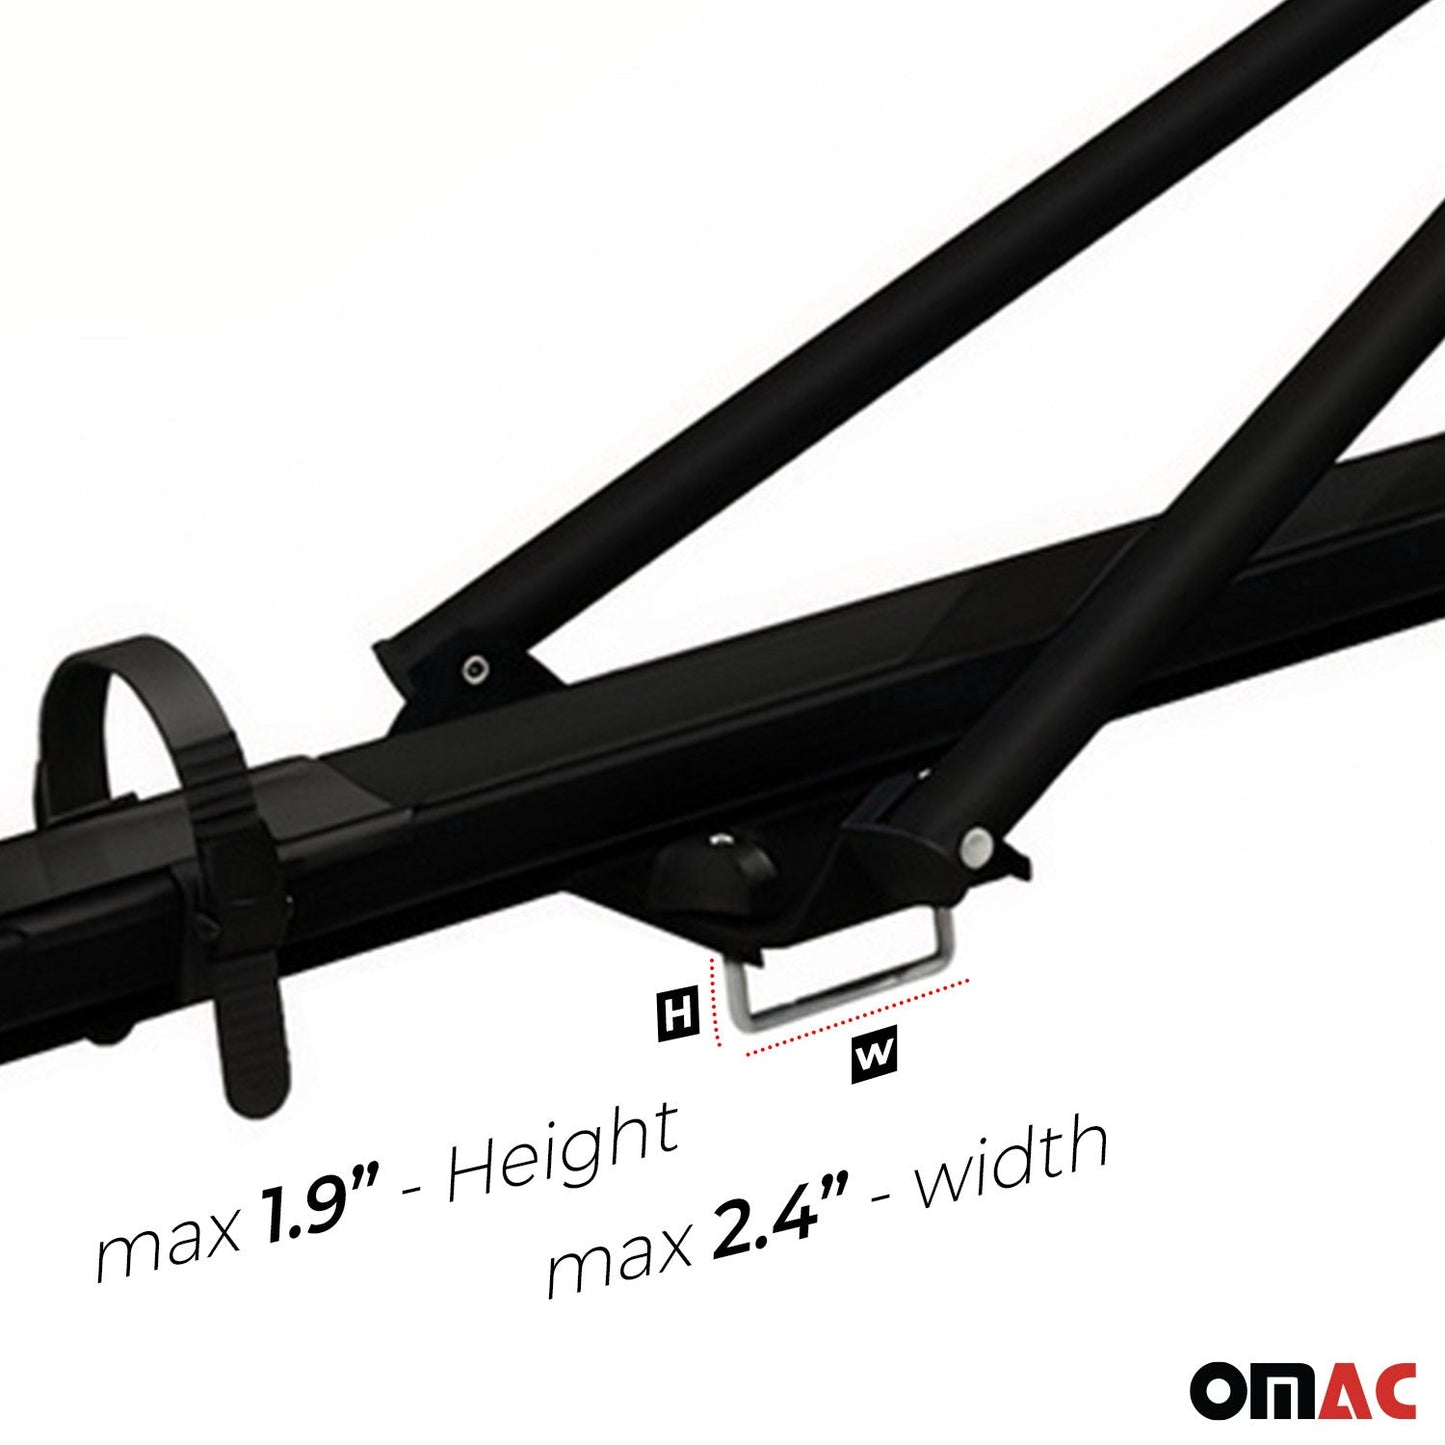 OMAC Bike Rack Carrier Roof Racks Set for Toyota RAV4 2013-2018 Black 3x U020742